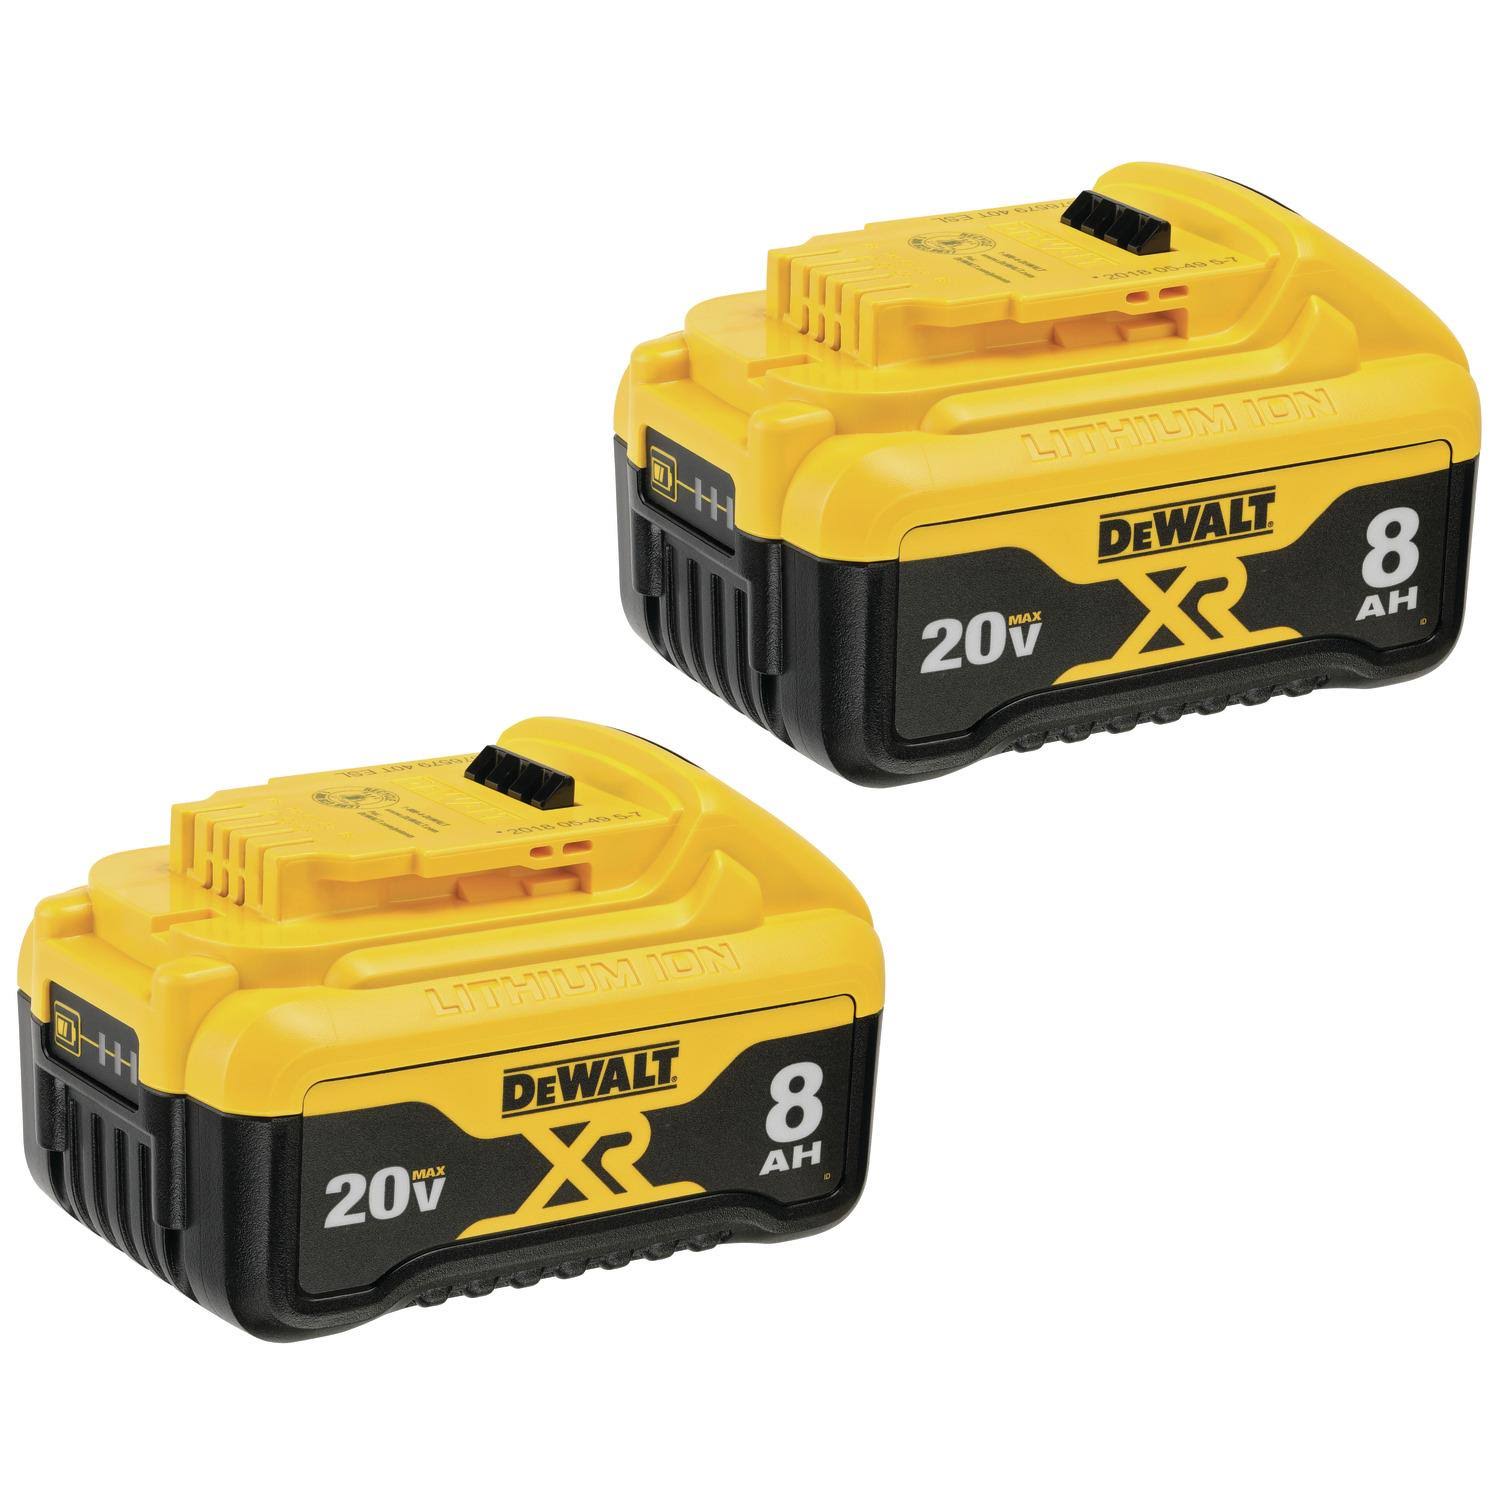 DeWalt 20 V Max* Xr Batteries, 8.0 Ah, 2 Pack (Dcb208 2)